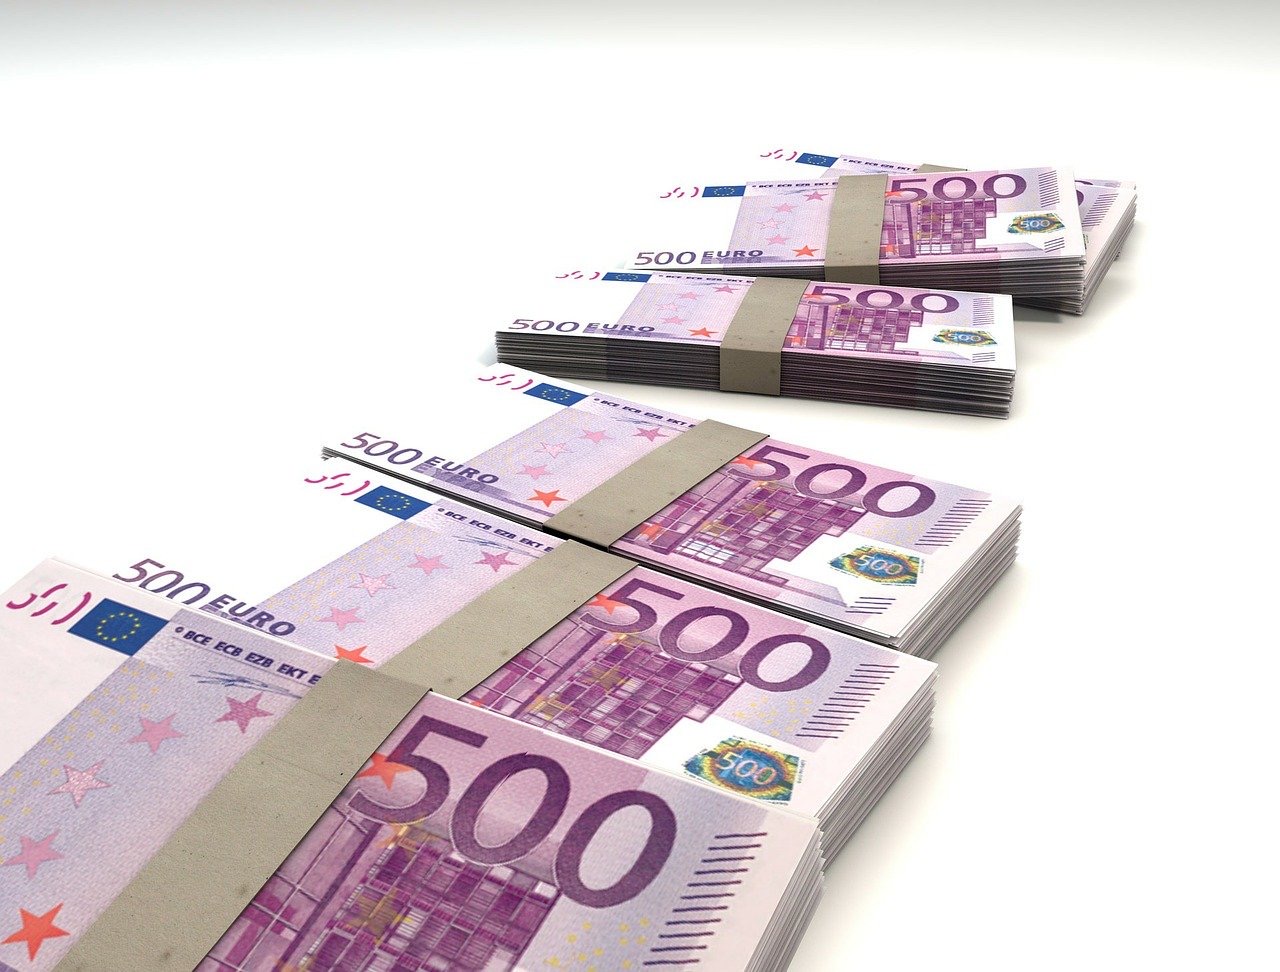 Greška ili utaja poreza: Podgorički advokat na privatni račun primio preko pola miliona eura